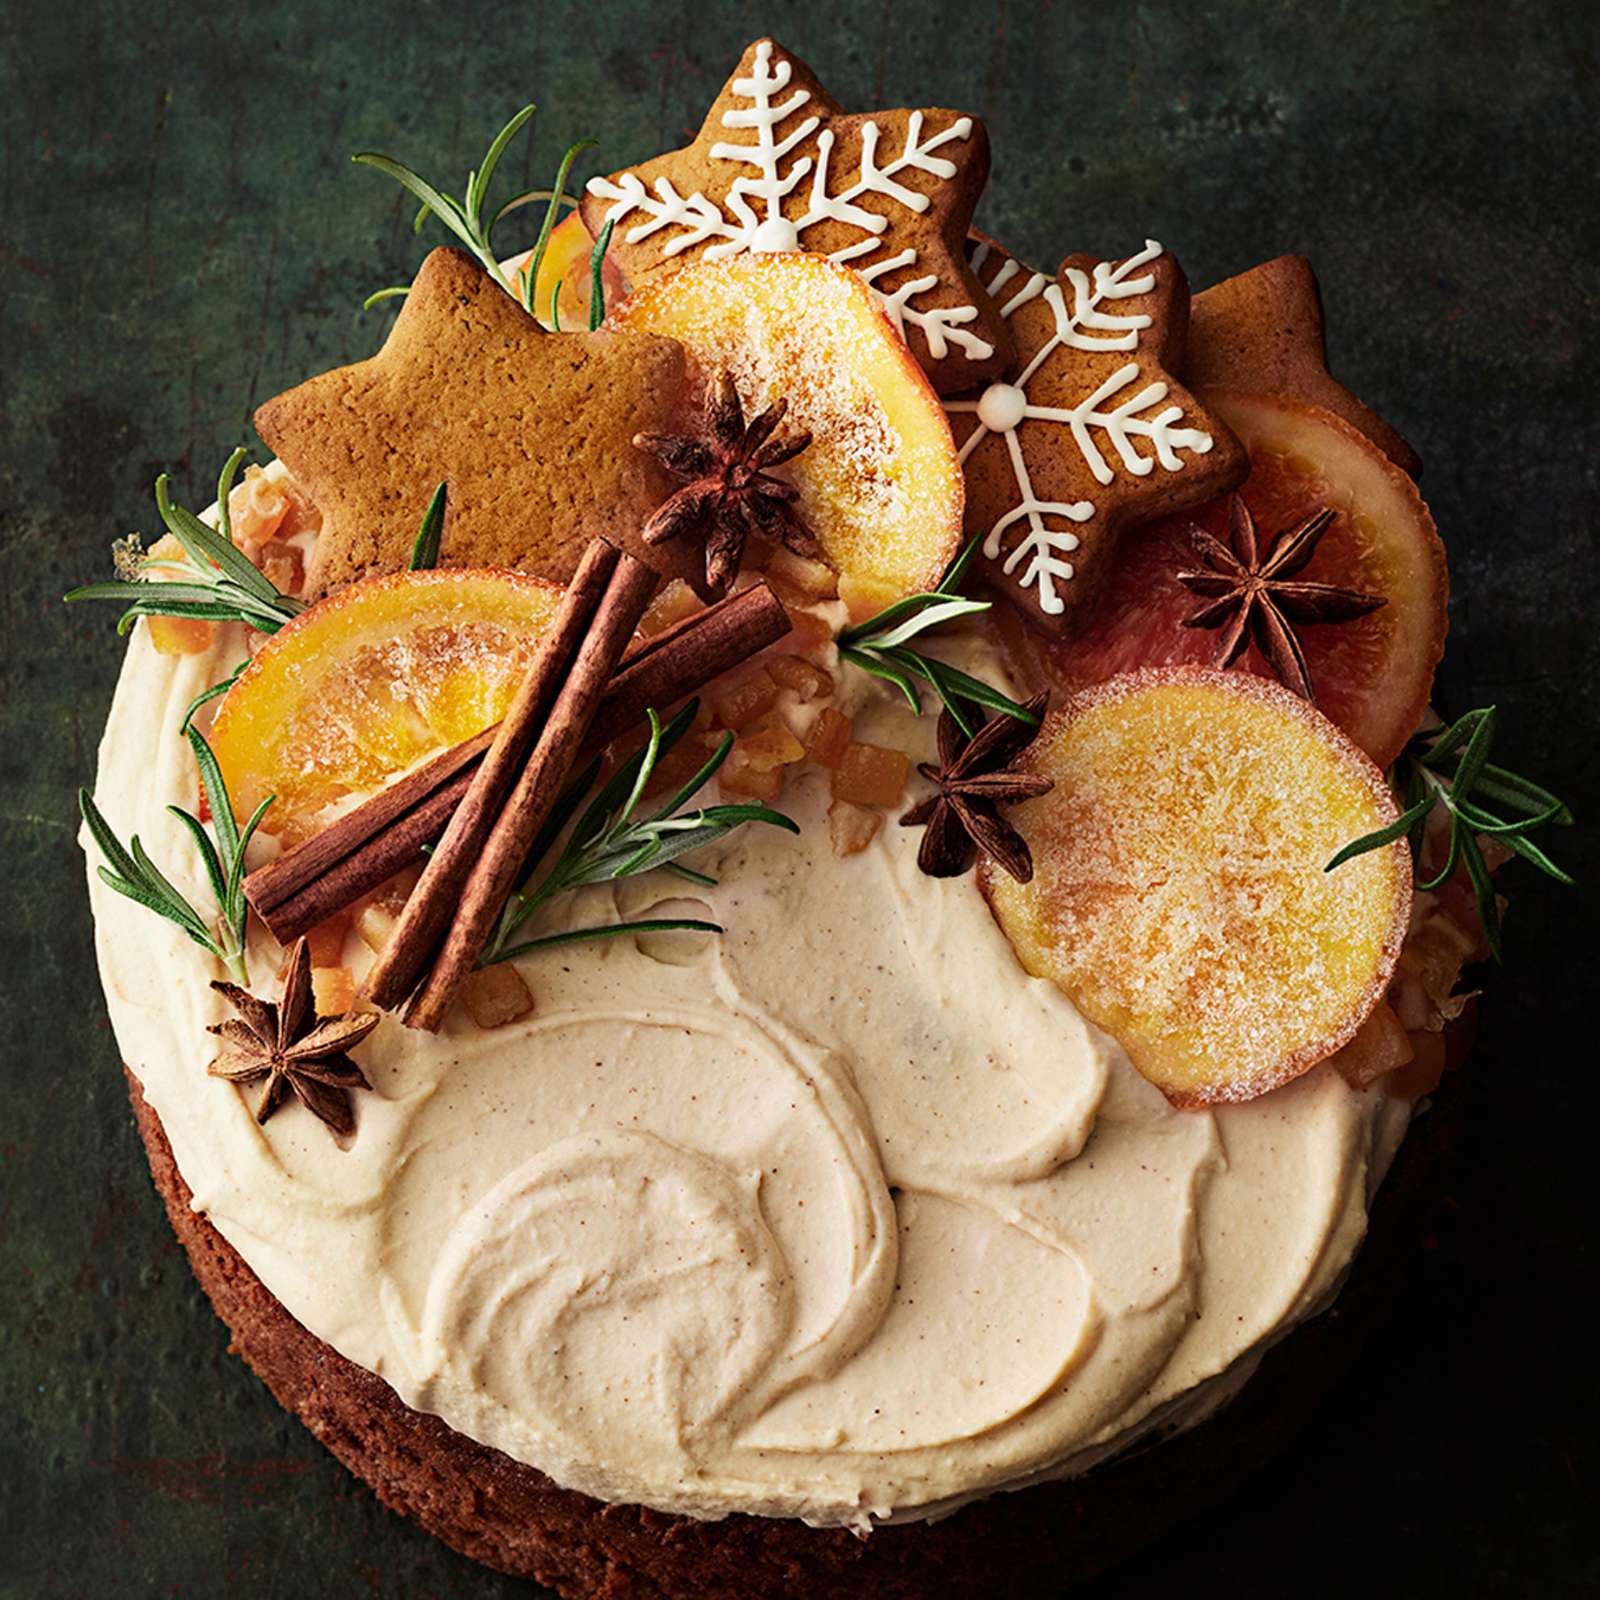 Englantilainen hedelmäkakku tuorejuustovaahdolla kuorrutettuna. Kakku on koristeltu kanelitangoilla, kandeeratuilla appelsiineilla, piparkakuilla, tähtianiksilla ja rosmariinitupsuilla.